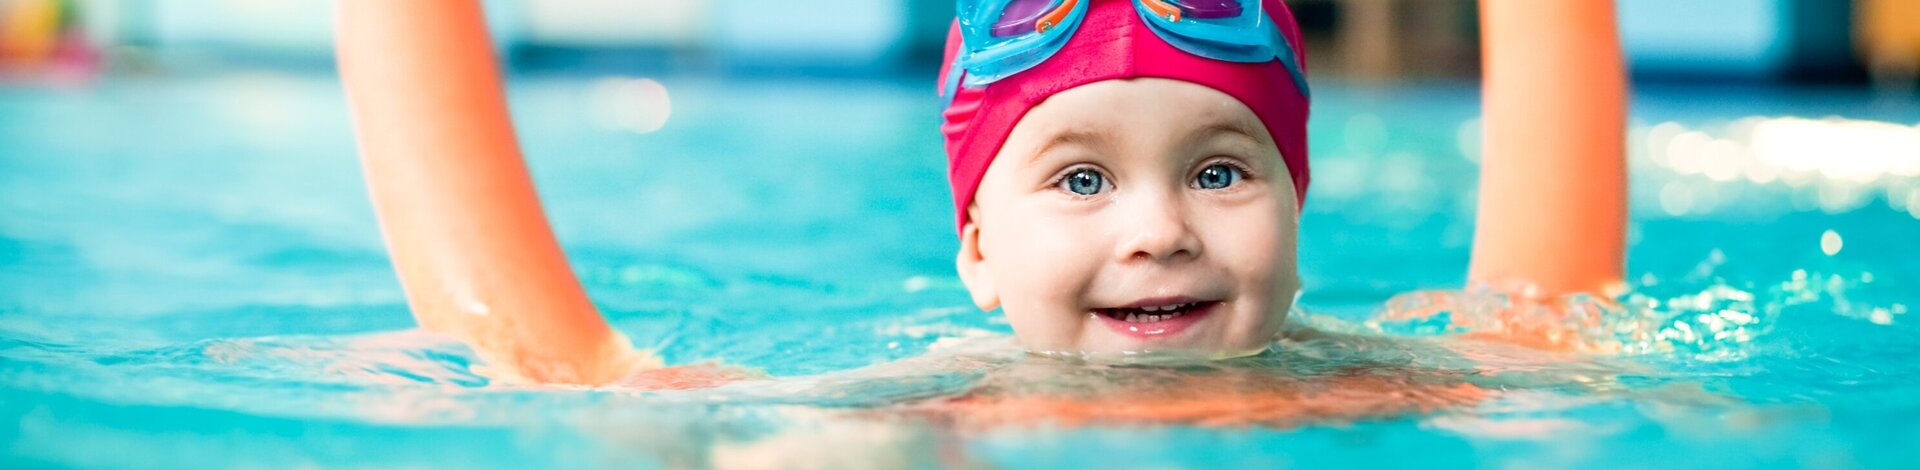 Kleinkind mit Poolnudel und Badekappe schwimmt im Wasser und freut sich.